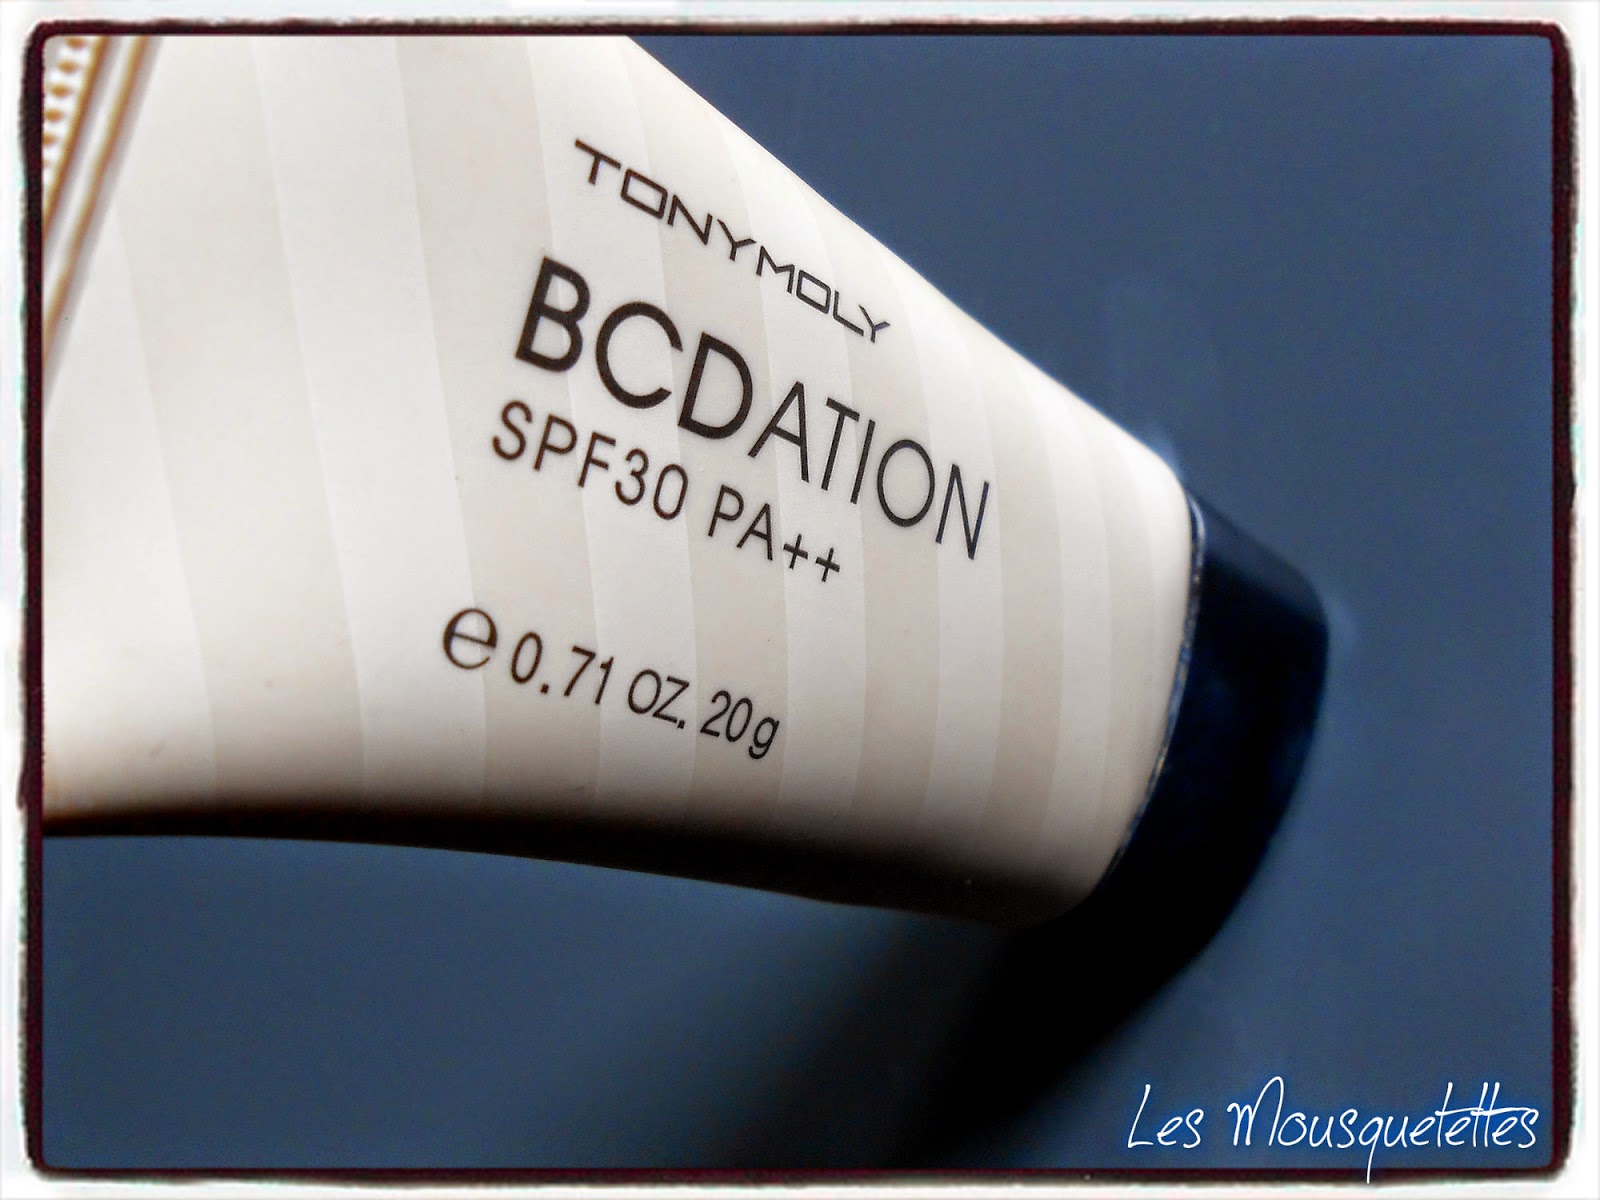 BCDation Tony Moly - Les Mousquetettes©